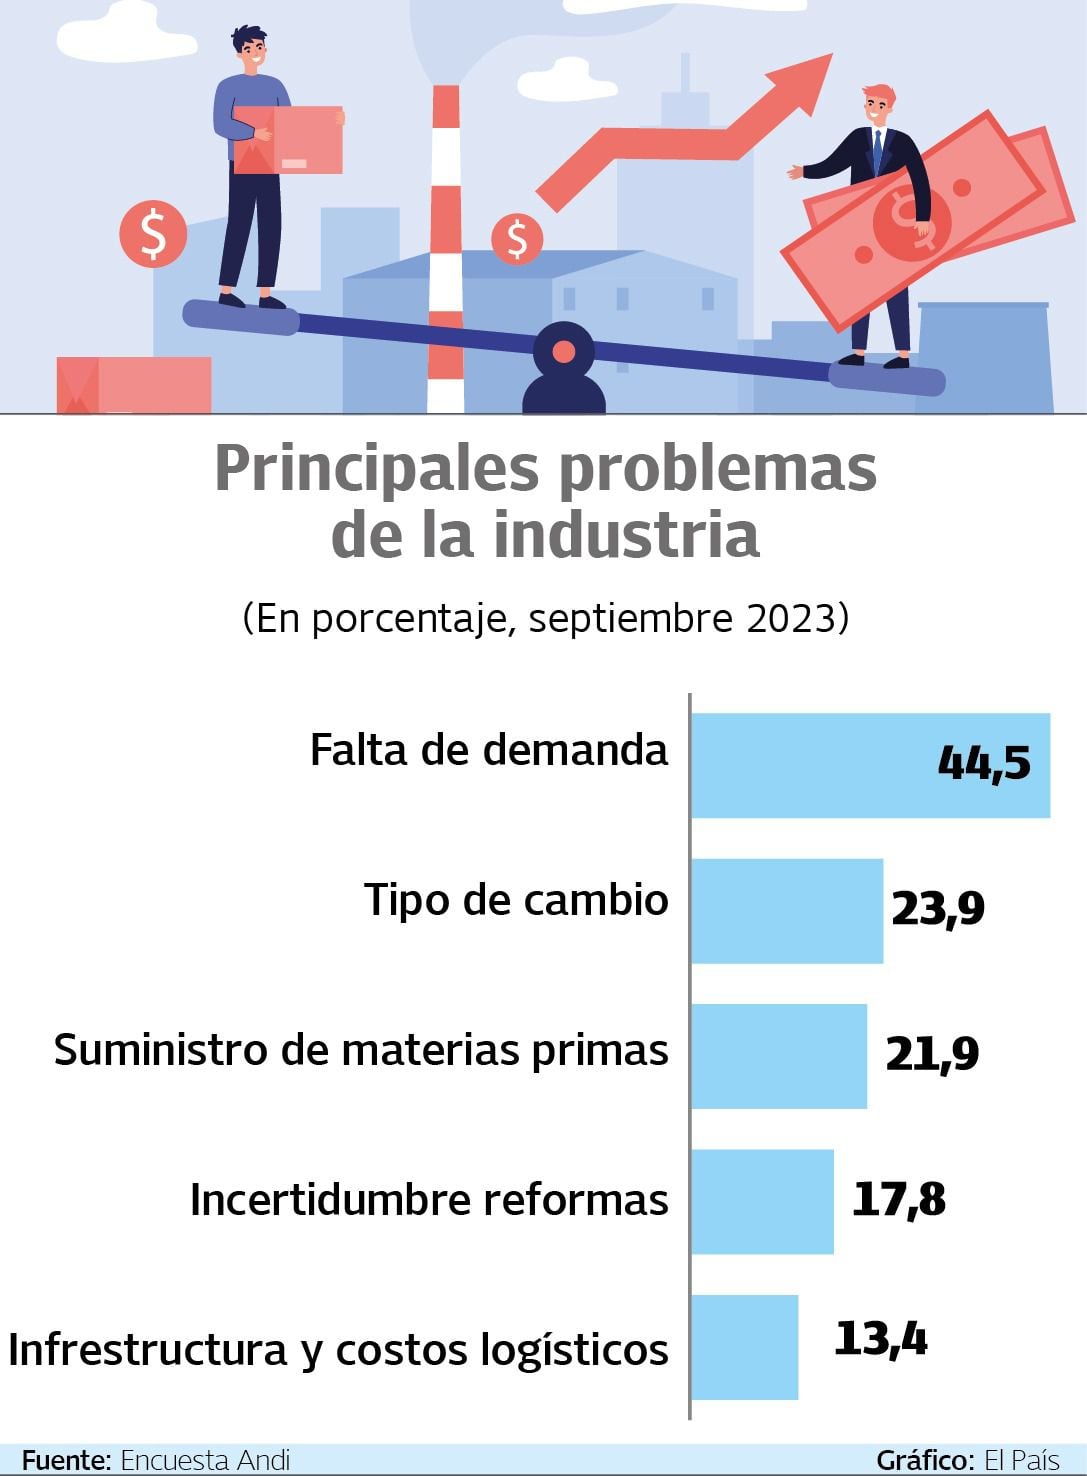 Según la Andi, la falta de demanda es el principal problema que enfrenta la industria en el país.
Gráfico: El País   Fuente: Encuesta Andi